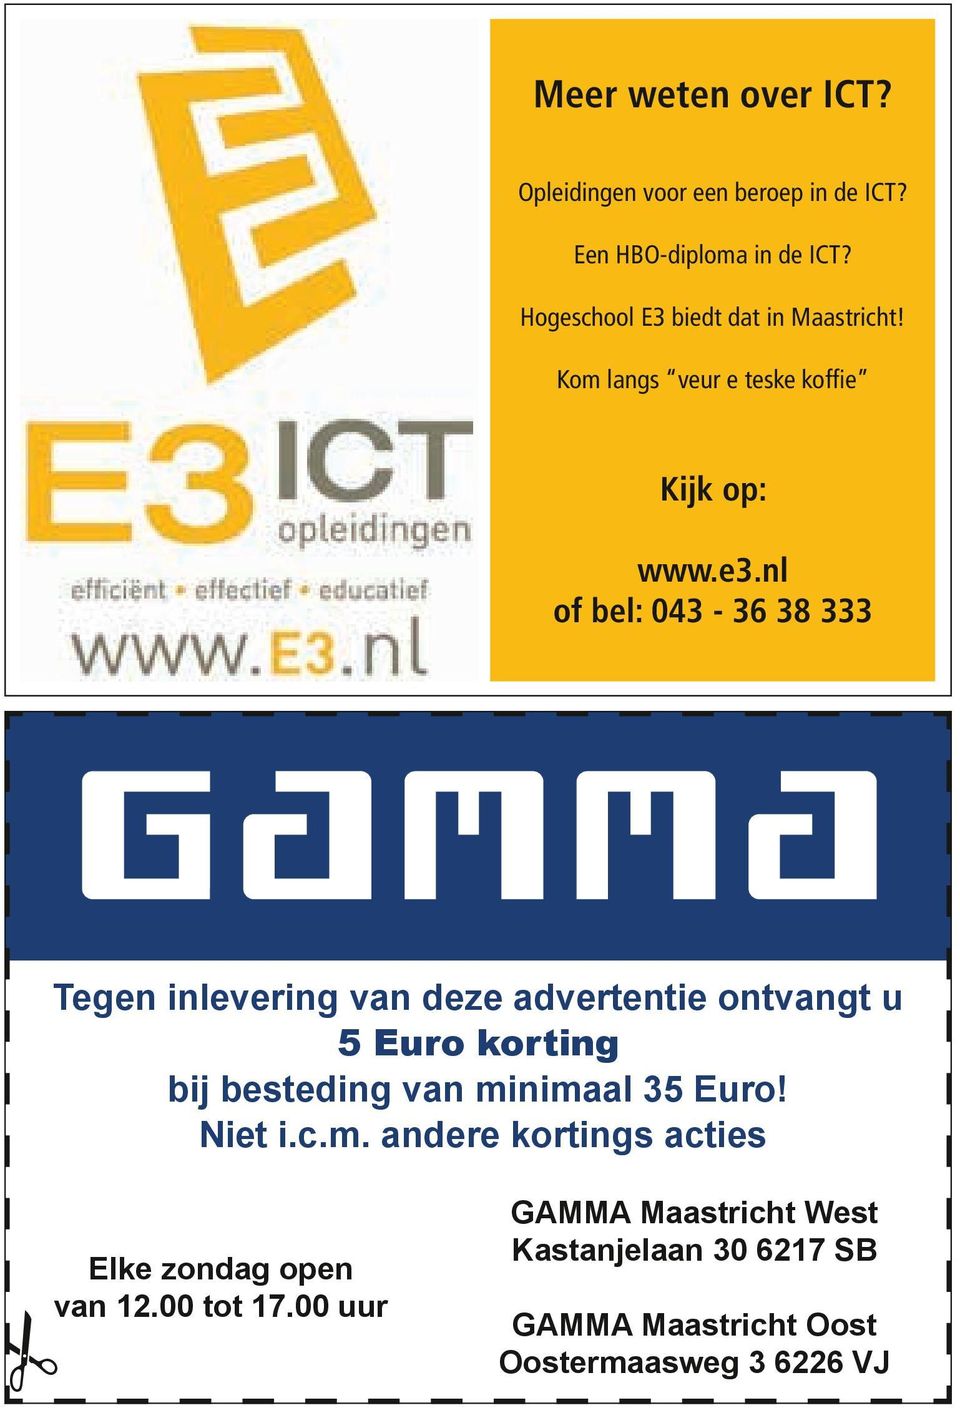 pdf 1 19-6-2013 16:44:29 Tegen inlevering van deze advertentie ontvangt u 5 Euro korting bij besteding van minimaal 35 Euro! Niet i.c.